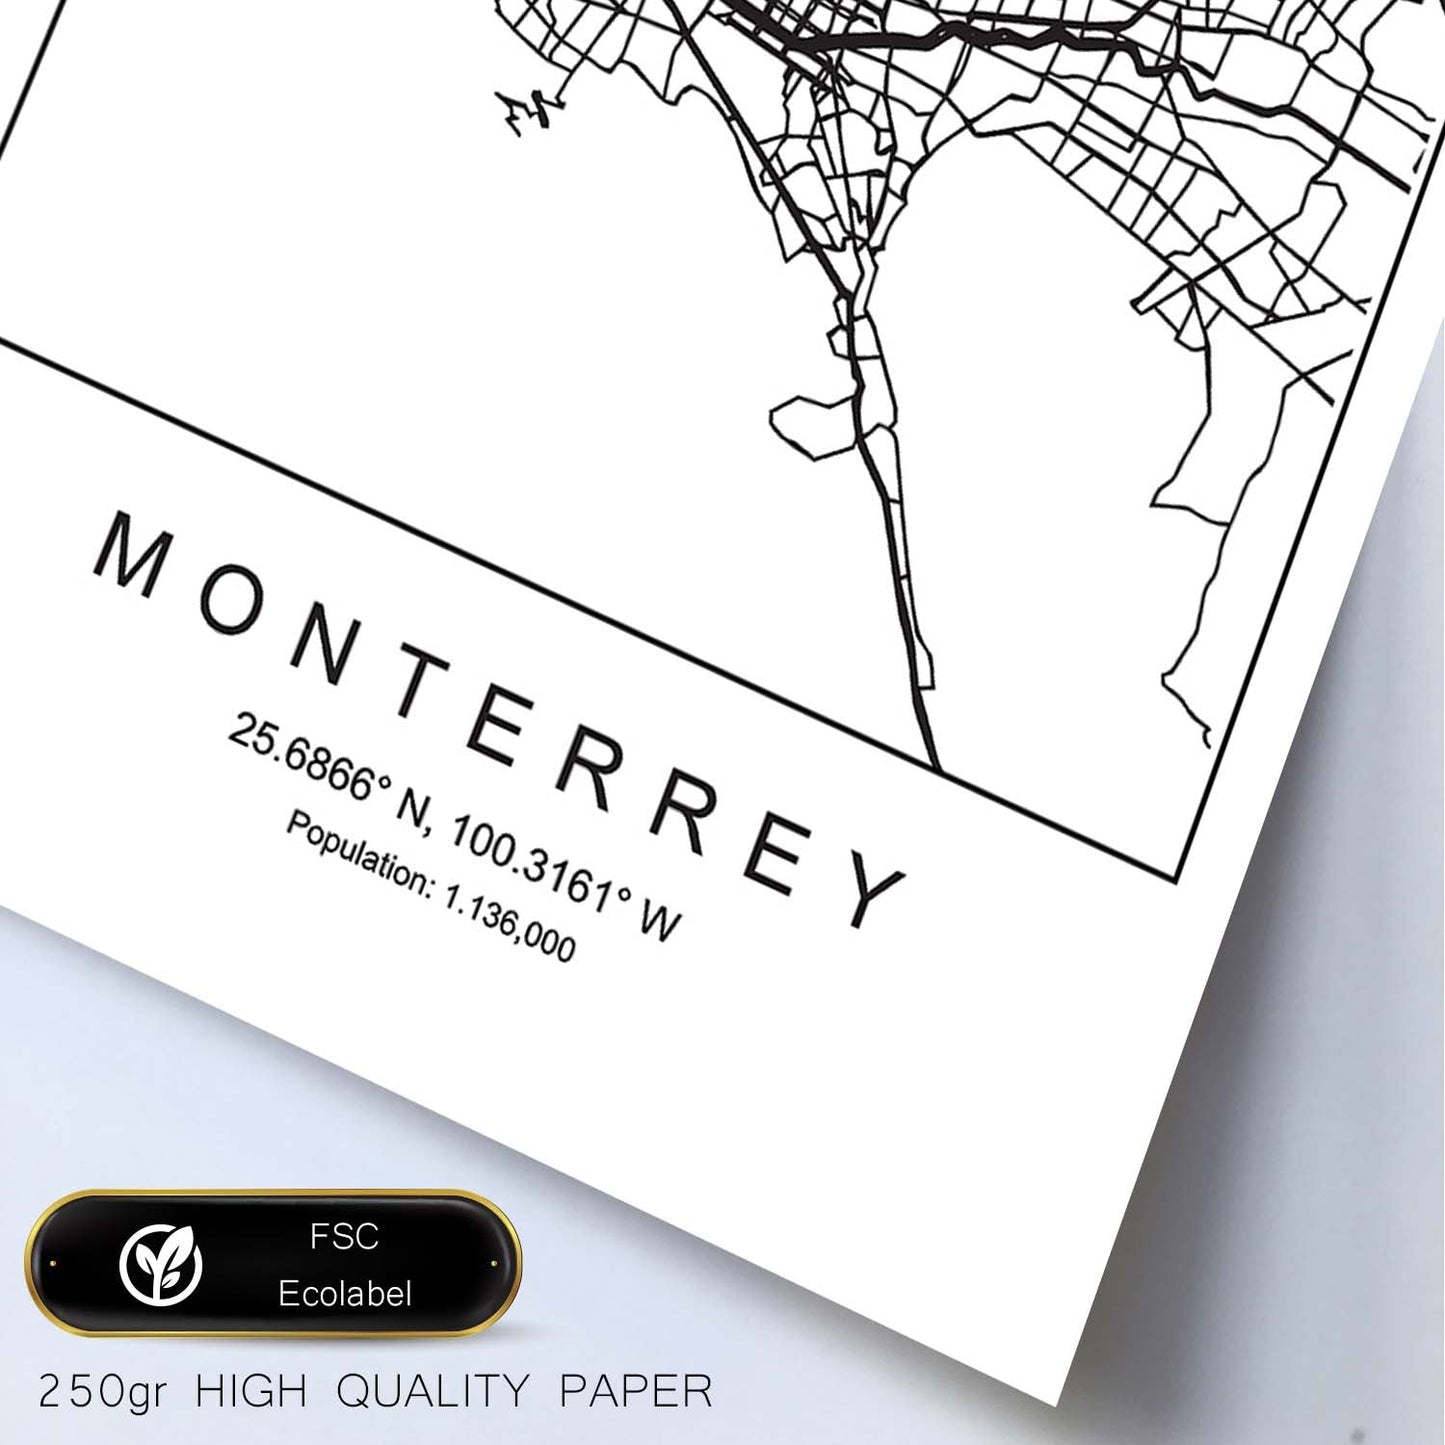 Lámina mapa de la ciudad Monterrey estilo nordico en blanco y negro.-Artwork-Nacnic-Nacnic Estudio SL